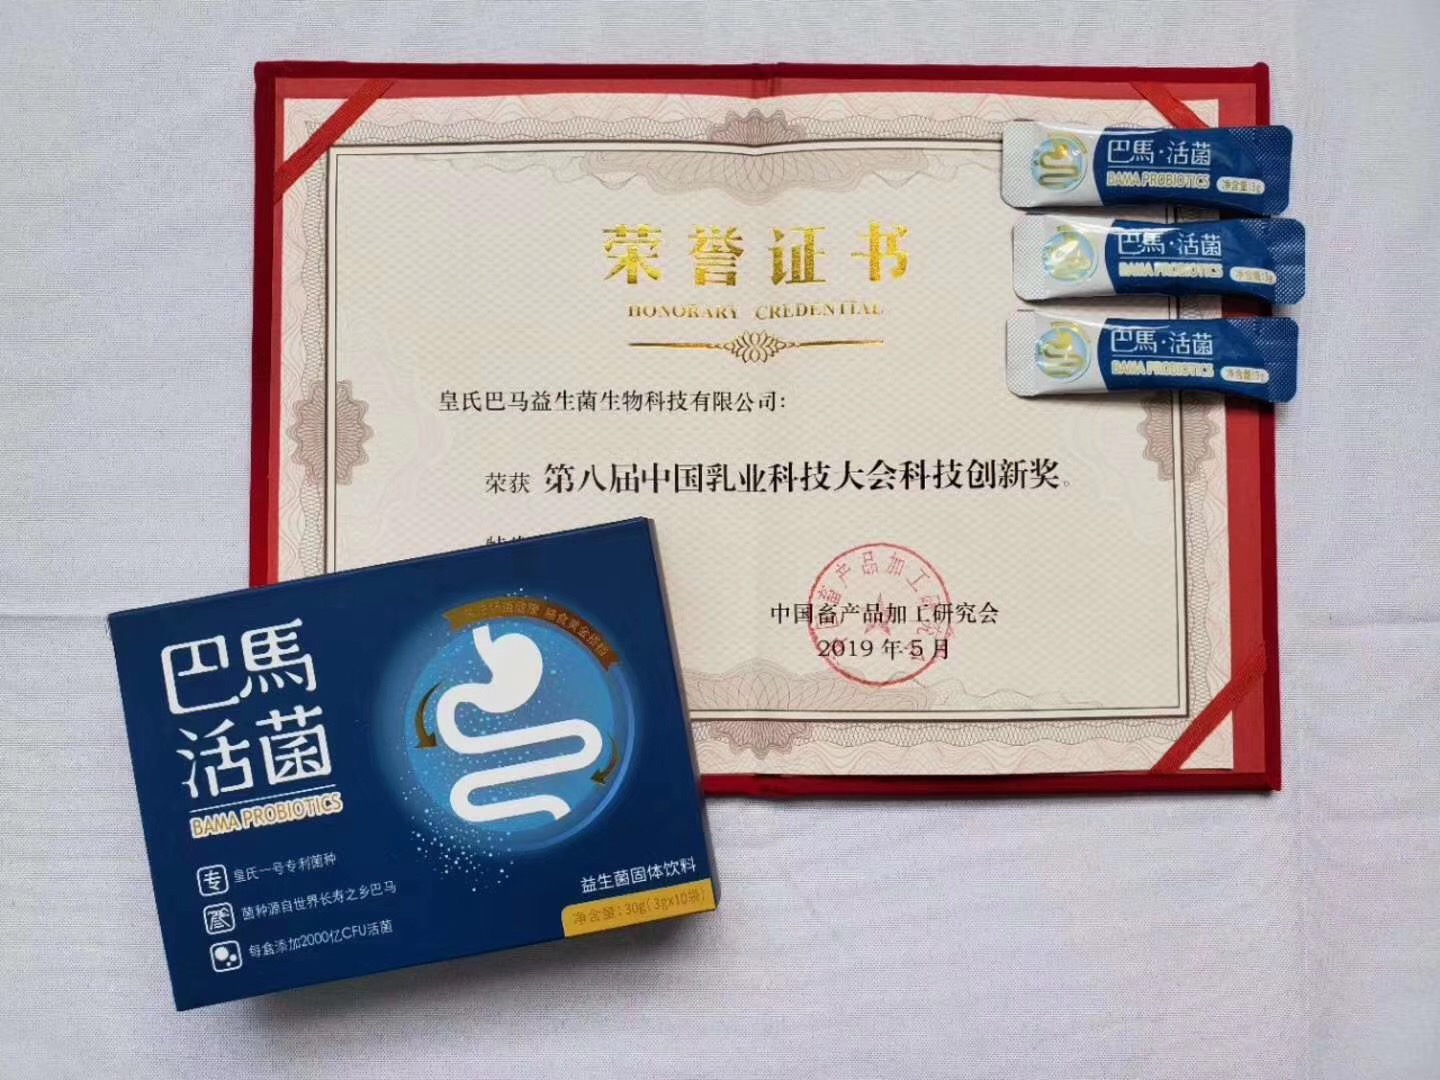 皇氏巴马益生菌生物科技有限公司荣获第八届中国乳业科技大会“科技创新奖”